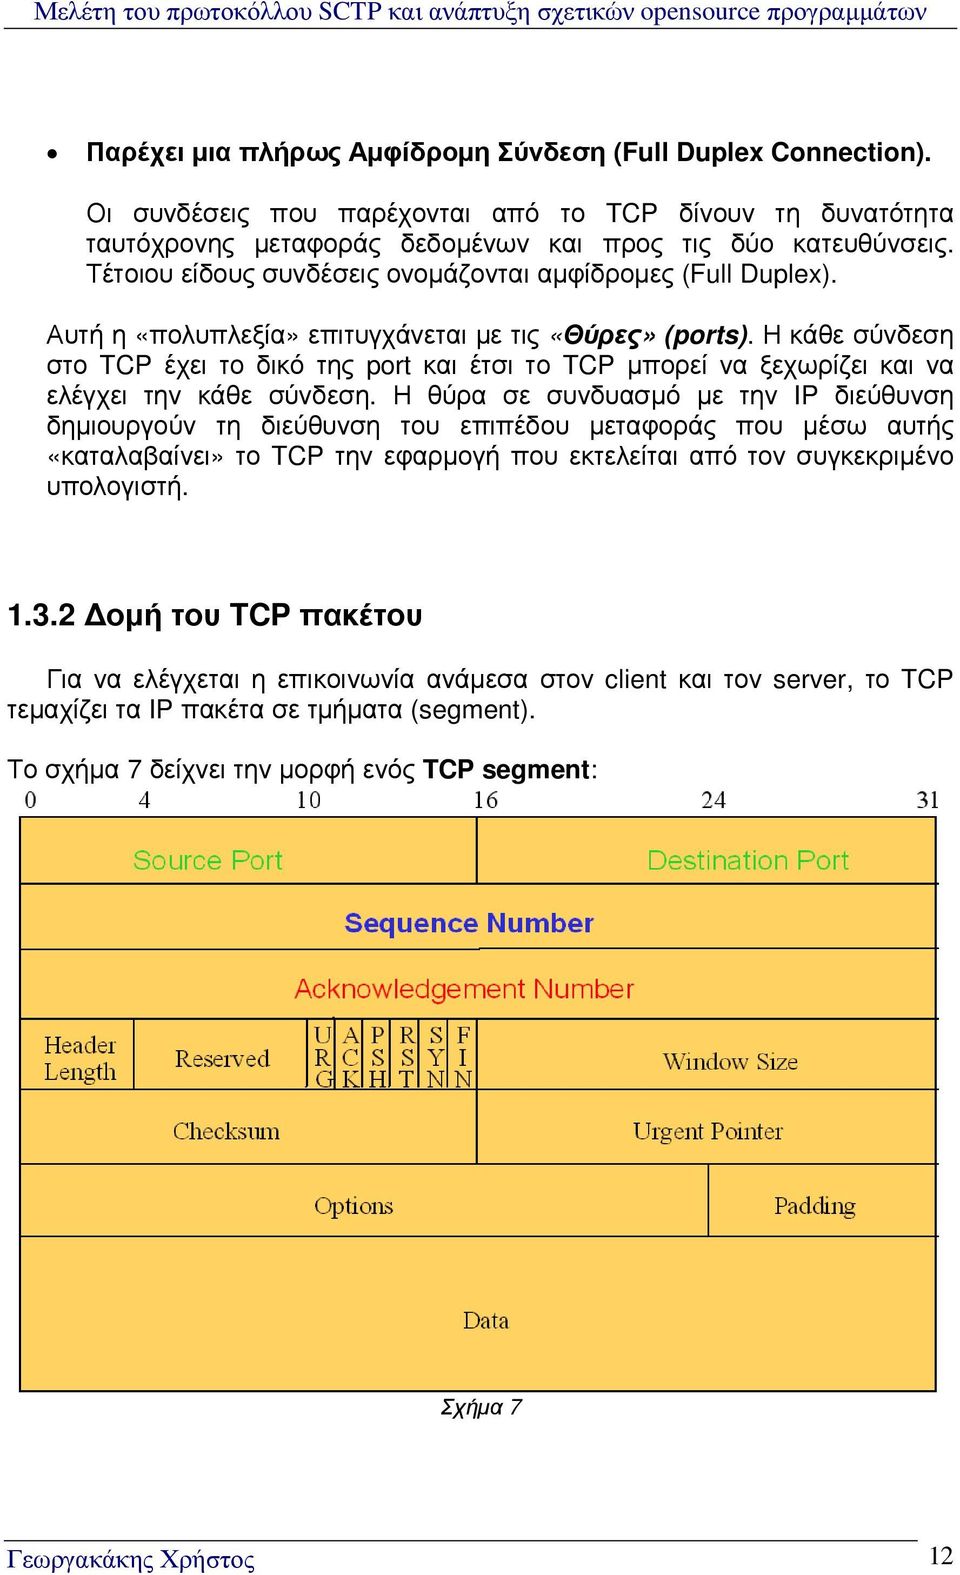 Η κάθε σύνδεση στο TCP έχει το δικό της port και έτσι το TCP µπορεί να ξεχωρίζει και να ελέγχει την κάθε σύνδεση.